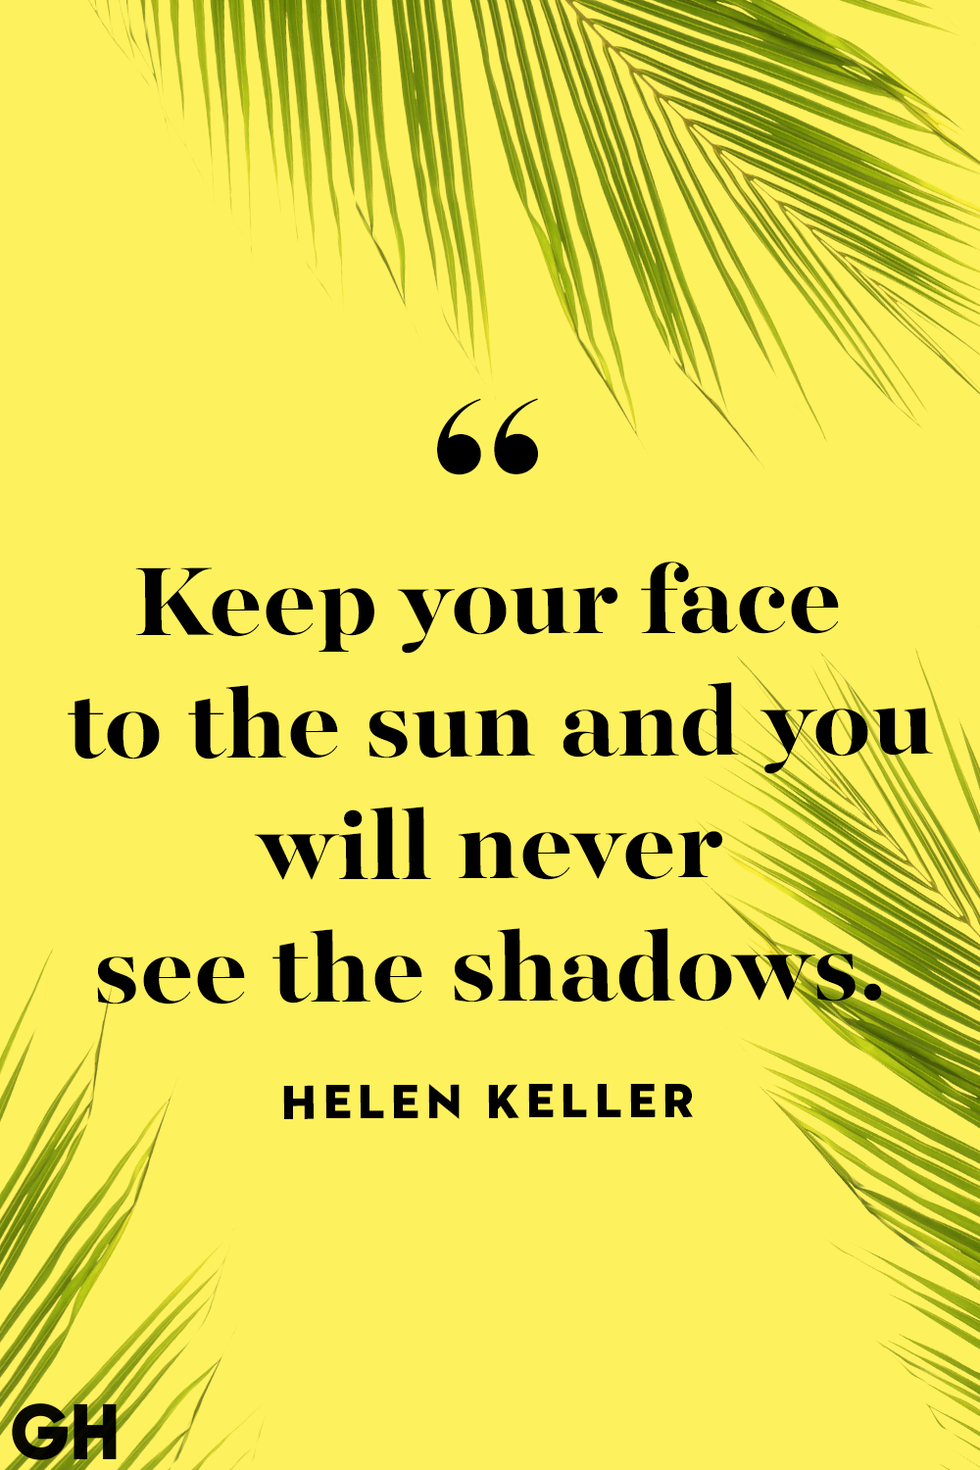 summer quote by hellen keller